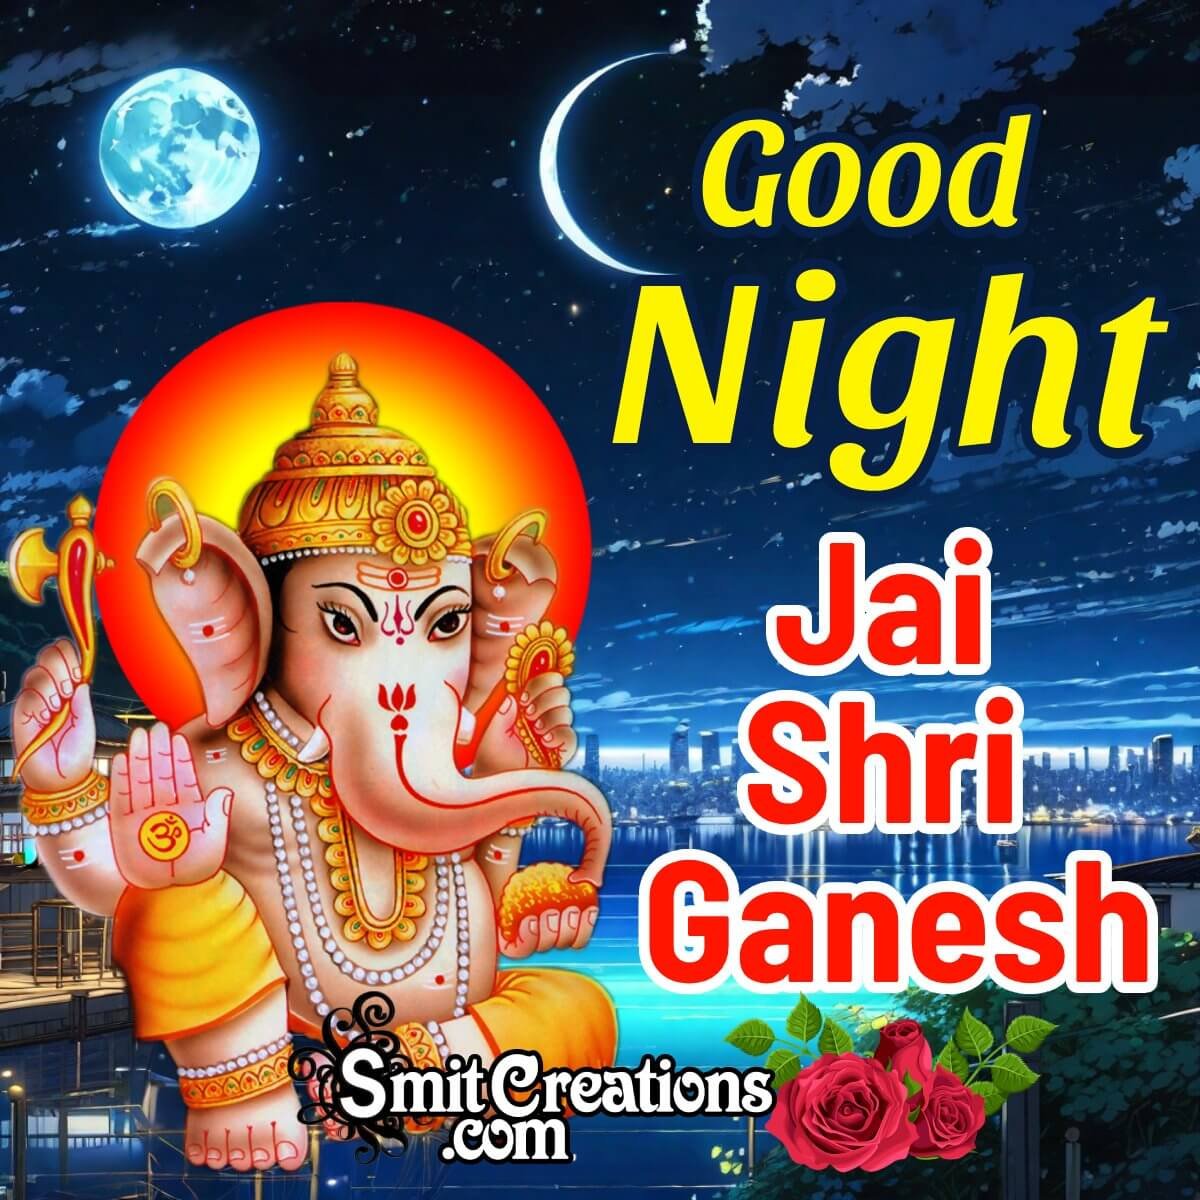 Good Night Jai Shri Ganesh Wish Image